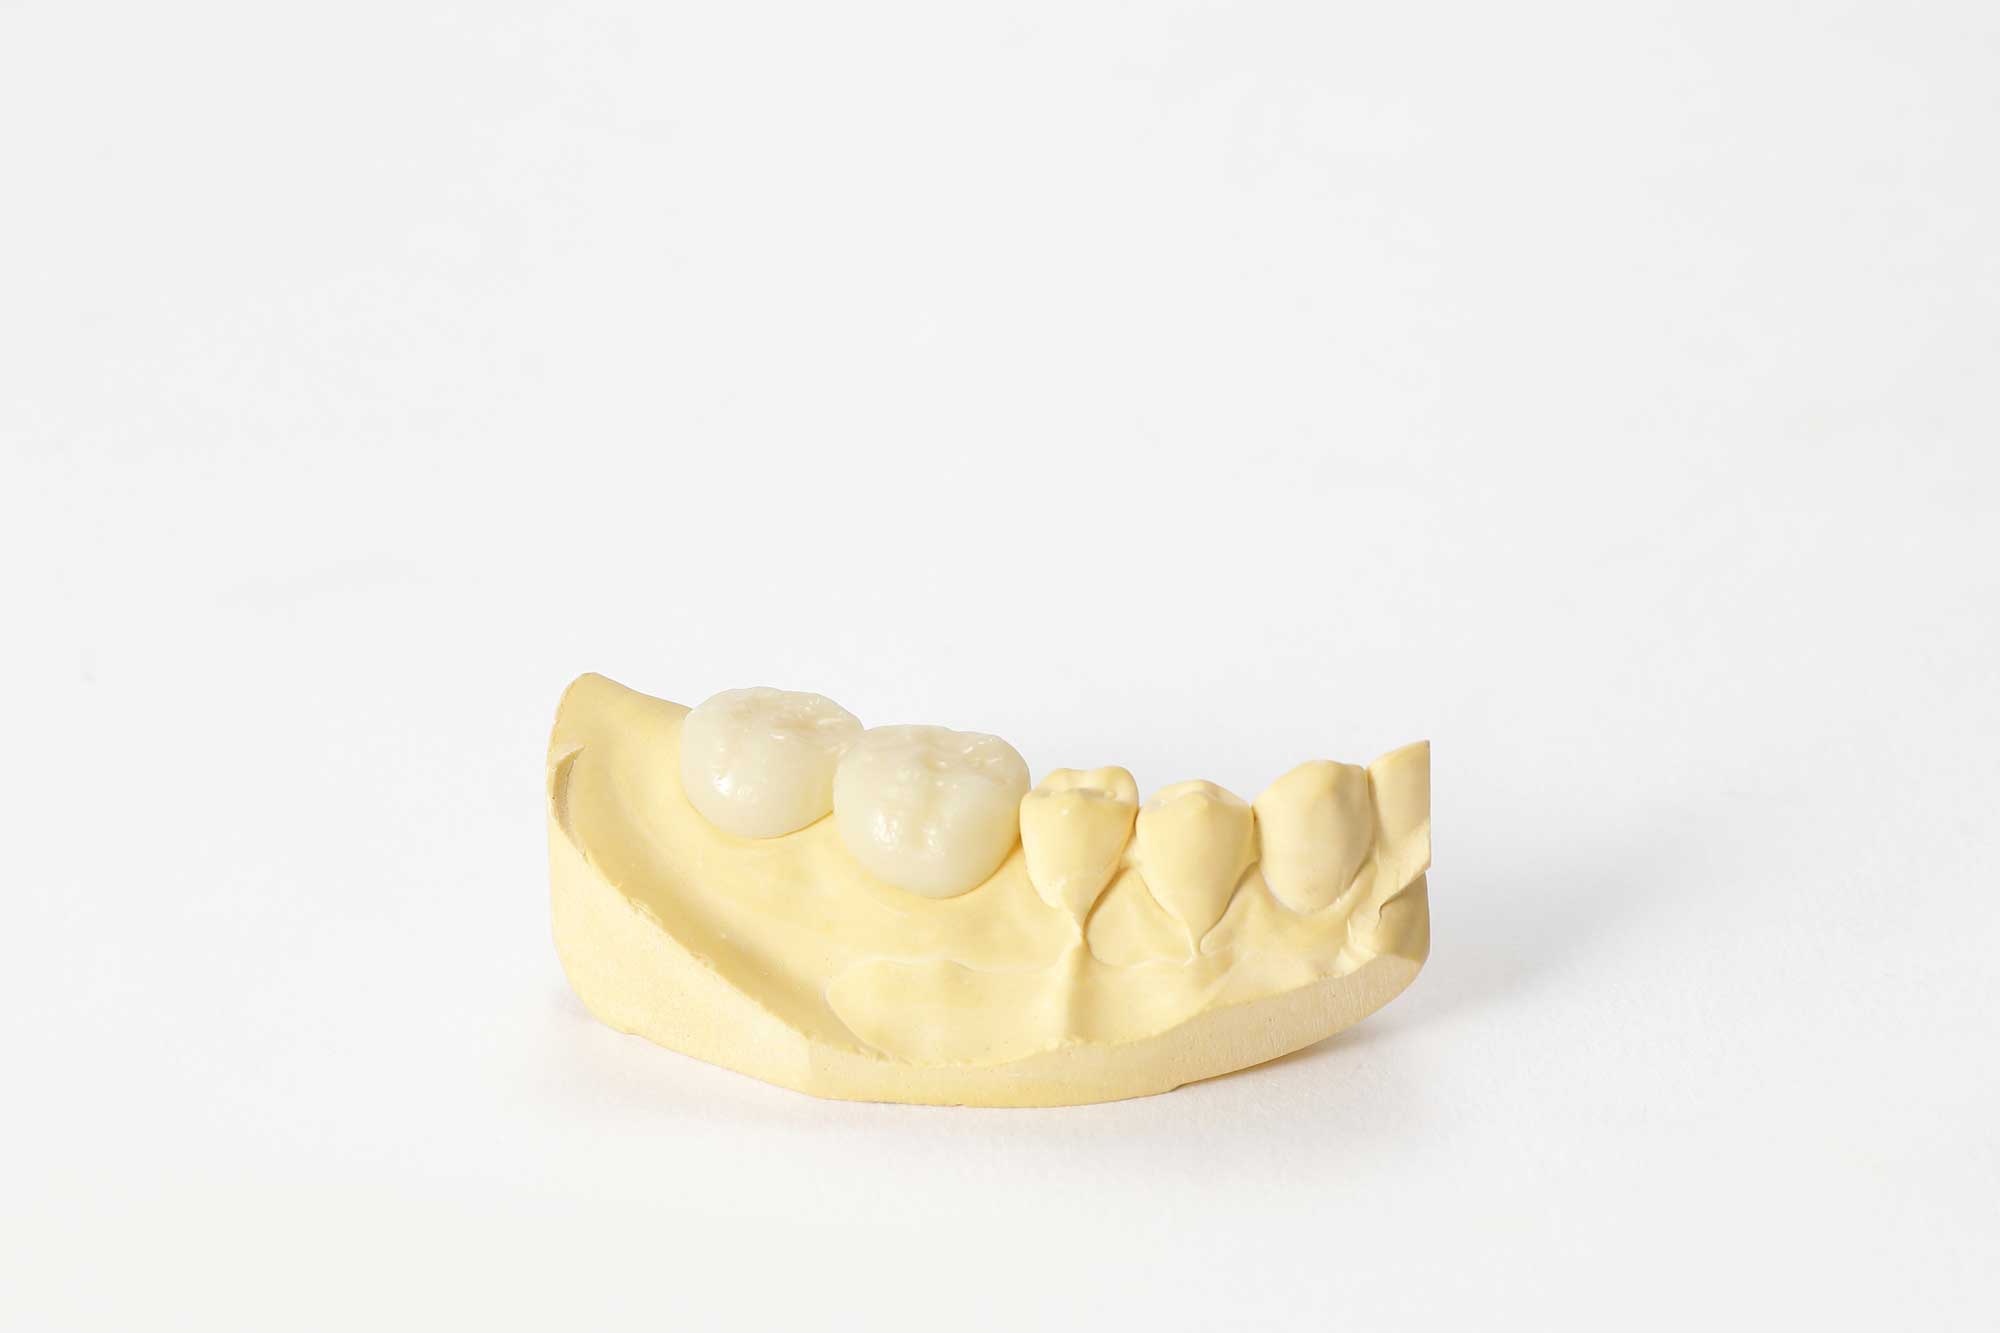 Tymczasowy most stomatologiczny nałożony na wycinkowy model zębów